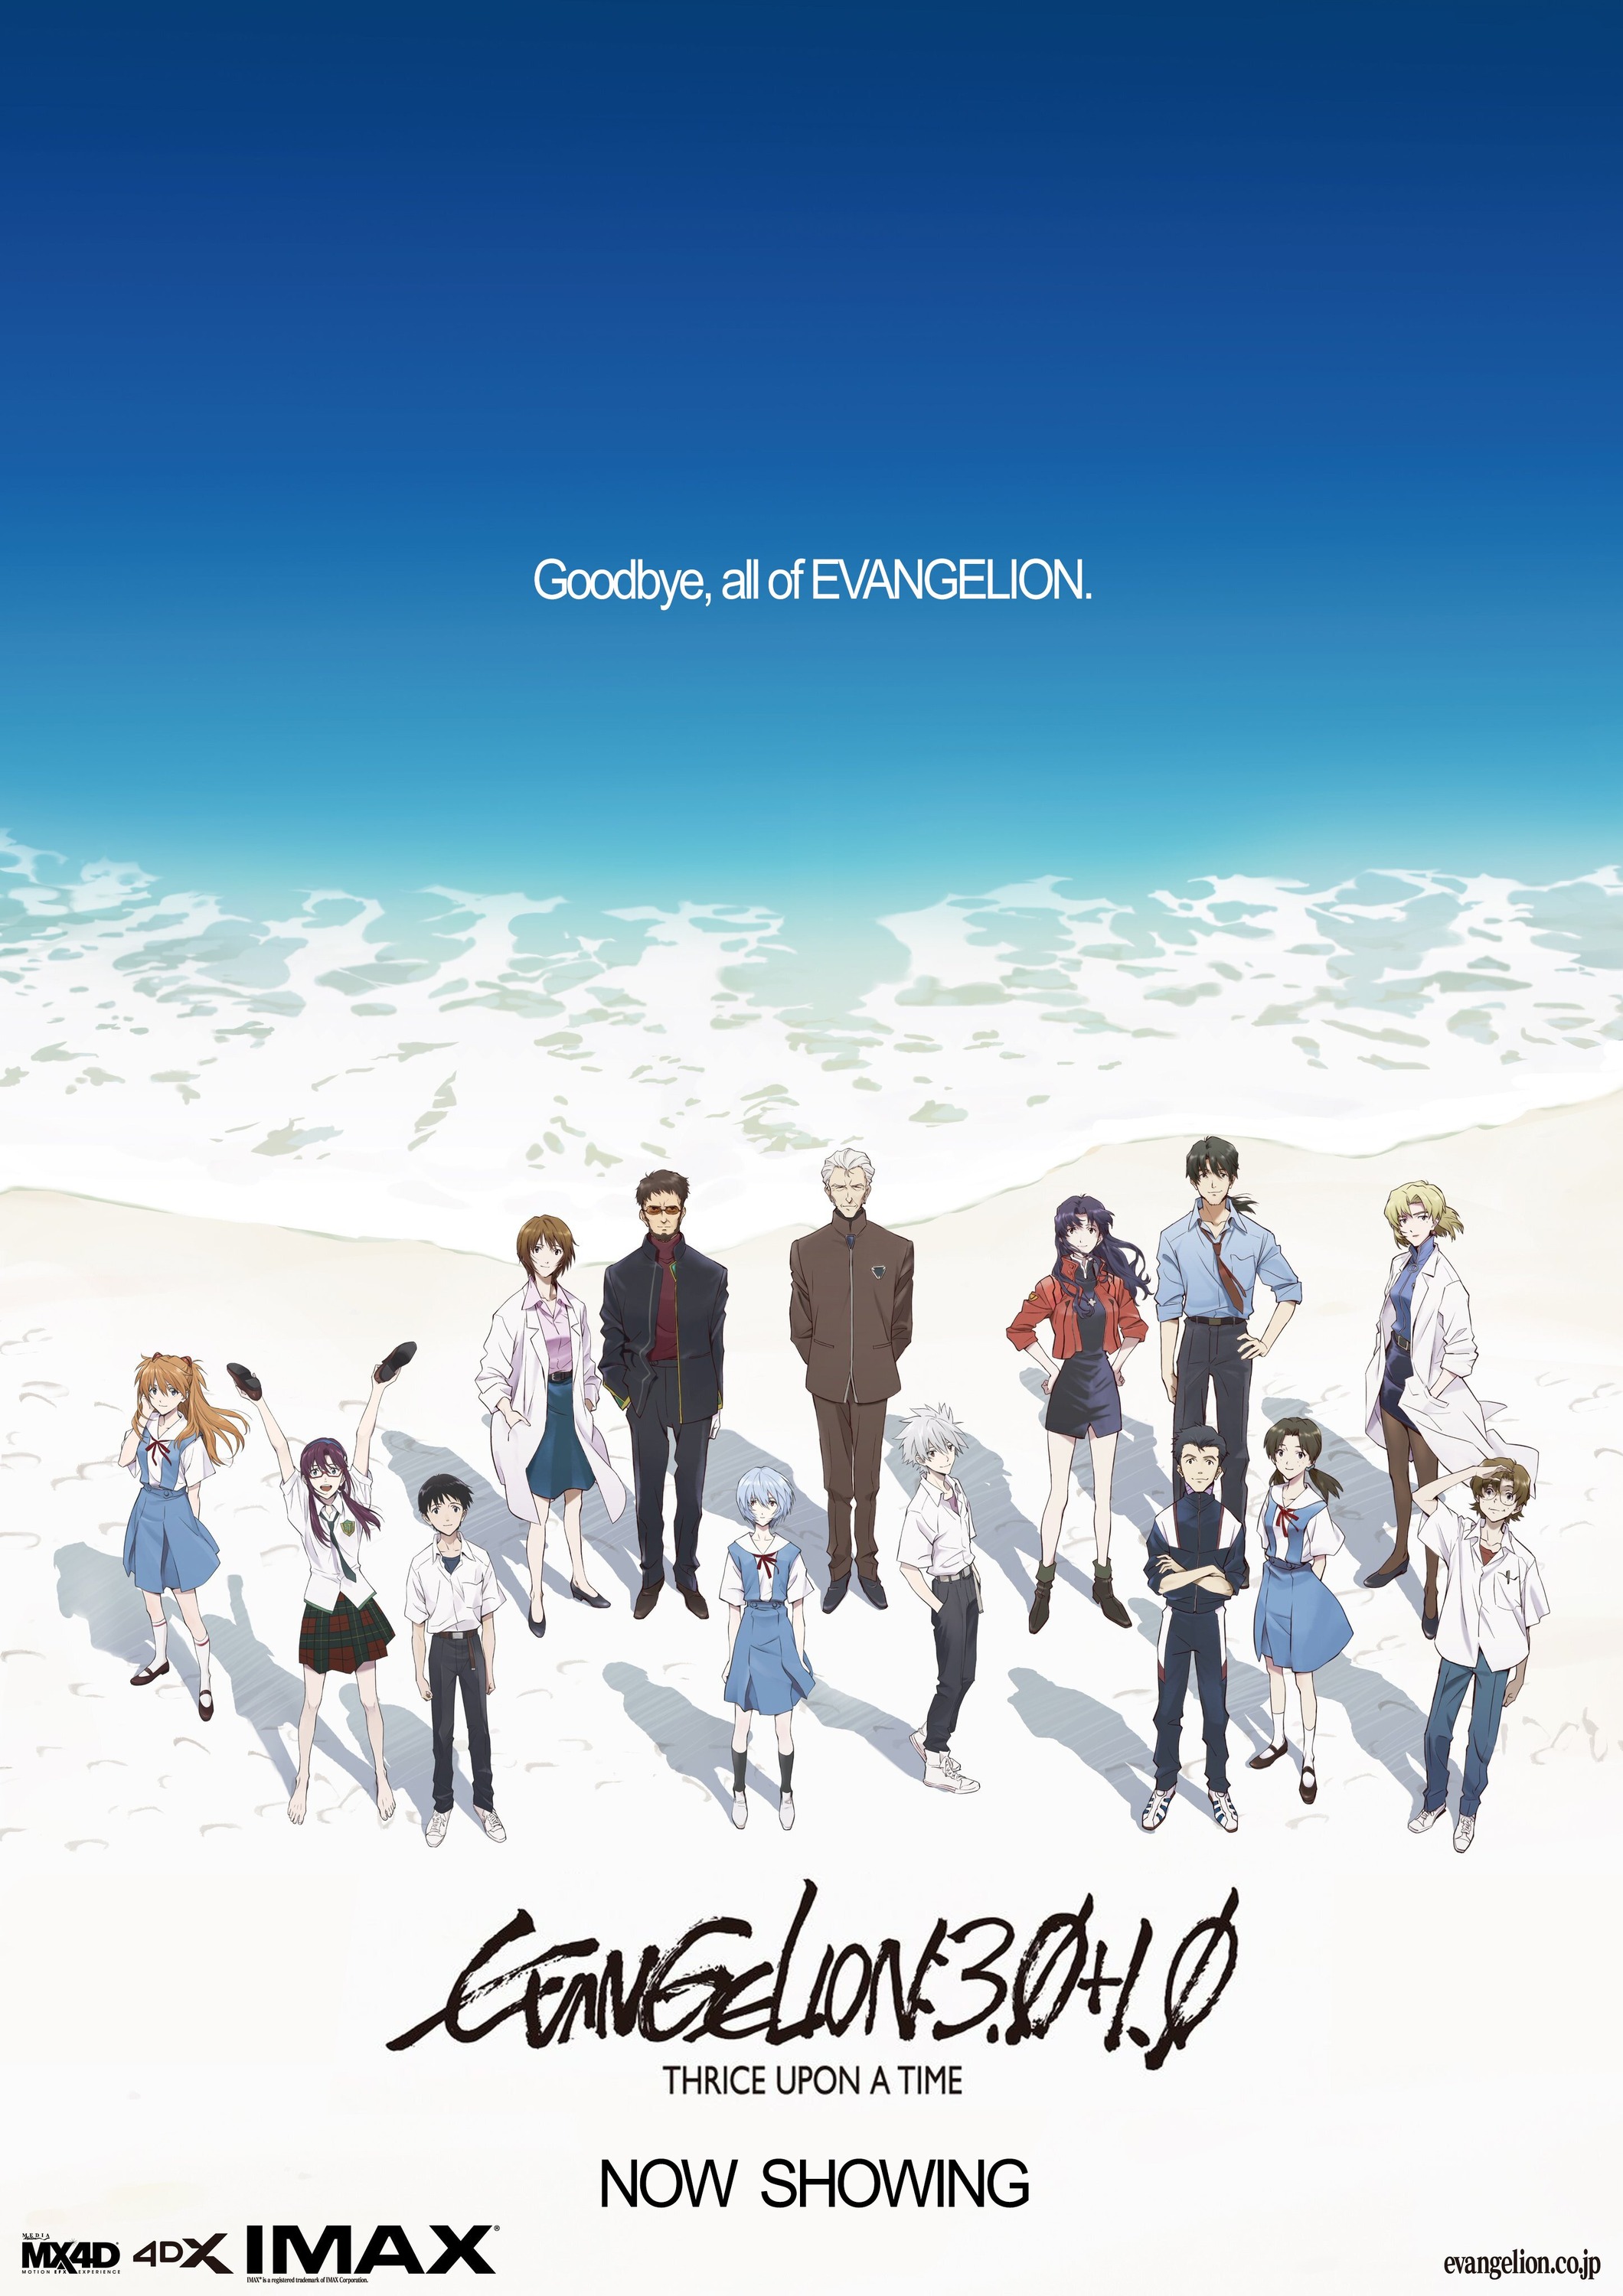 Mega Sized Movie Poster Image for Evangerion shin gekijoban (#3 of 3)